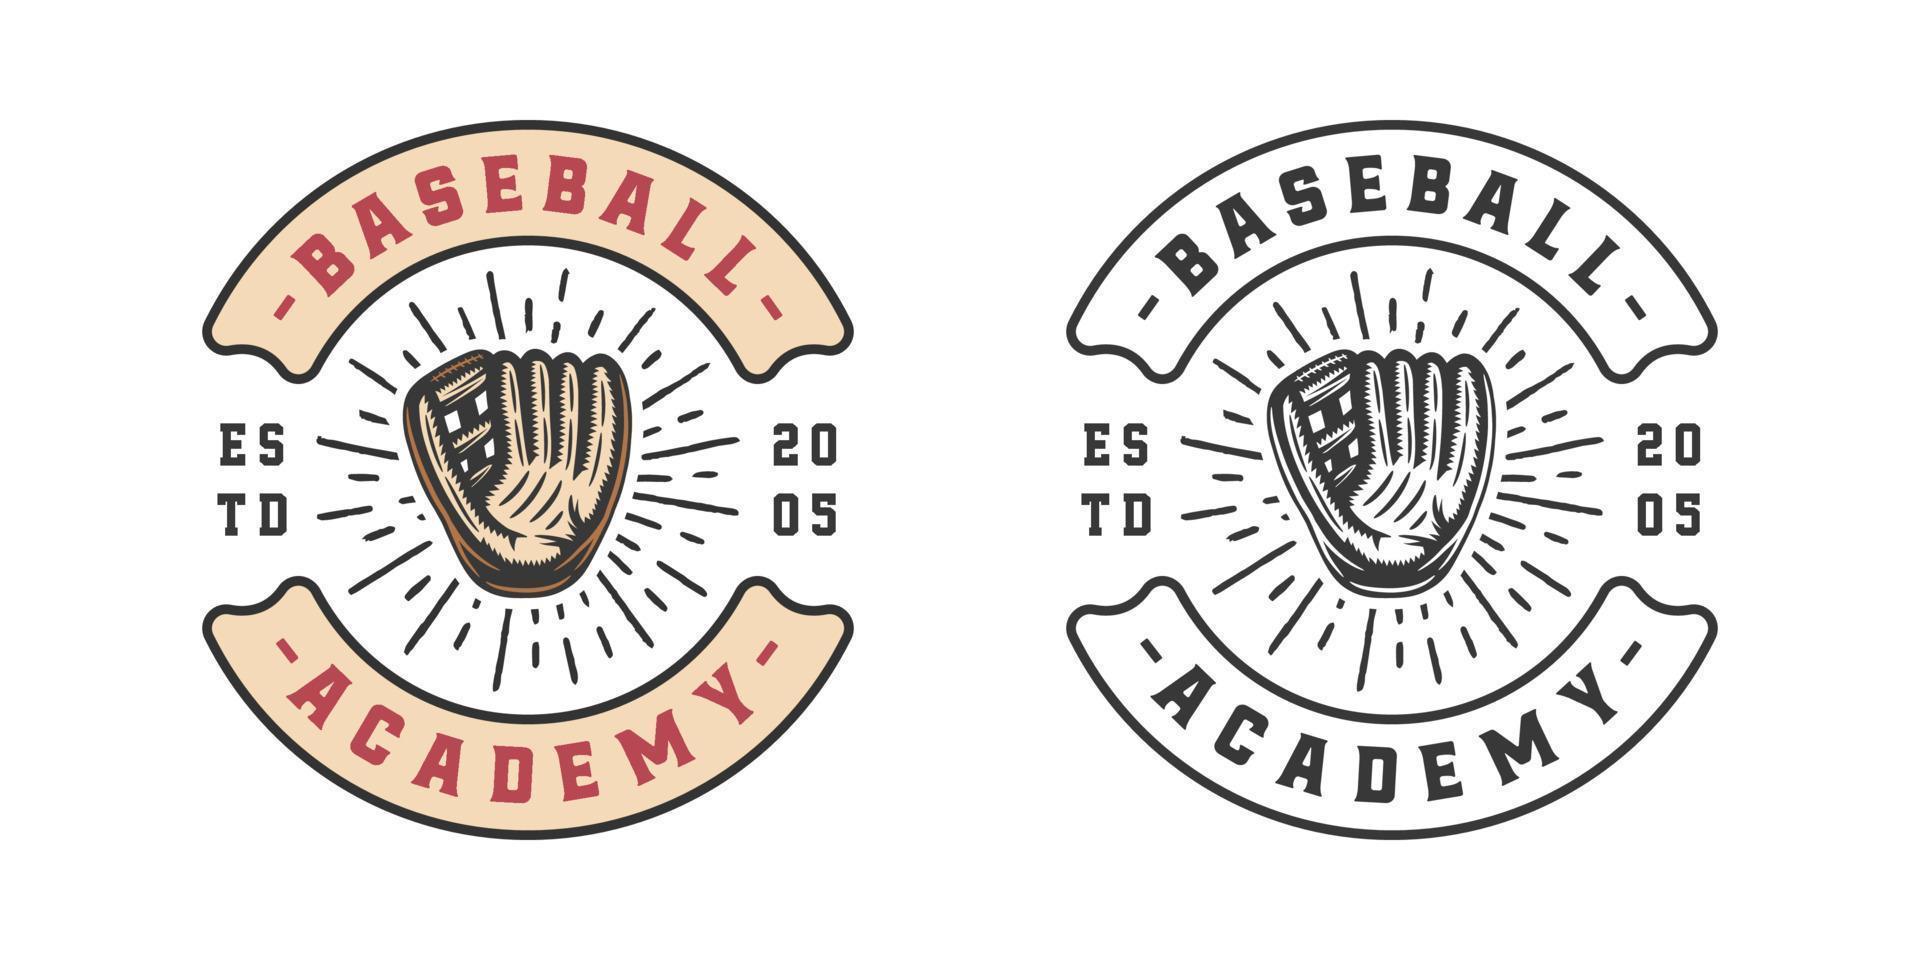 Jahrgang retro Baseball Sport Emblem, Logo, Abzeichen, Etikett. markieren, Poster oder drucken. einfarbig Grafik Kunst. Vektor Illustration.